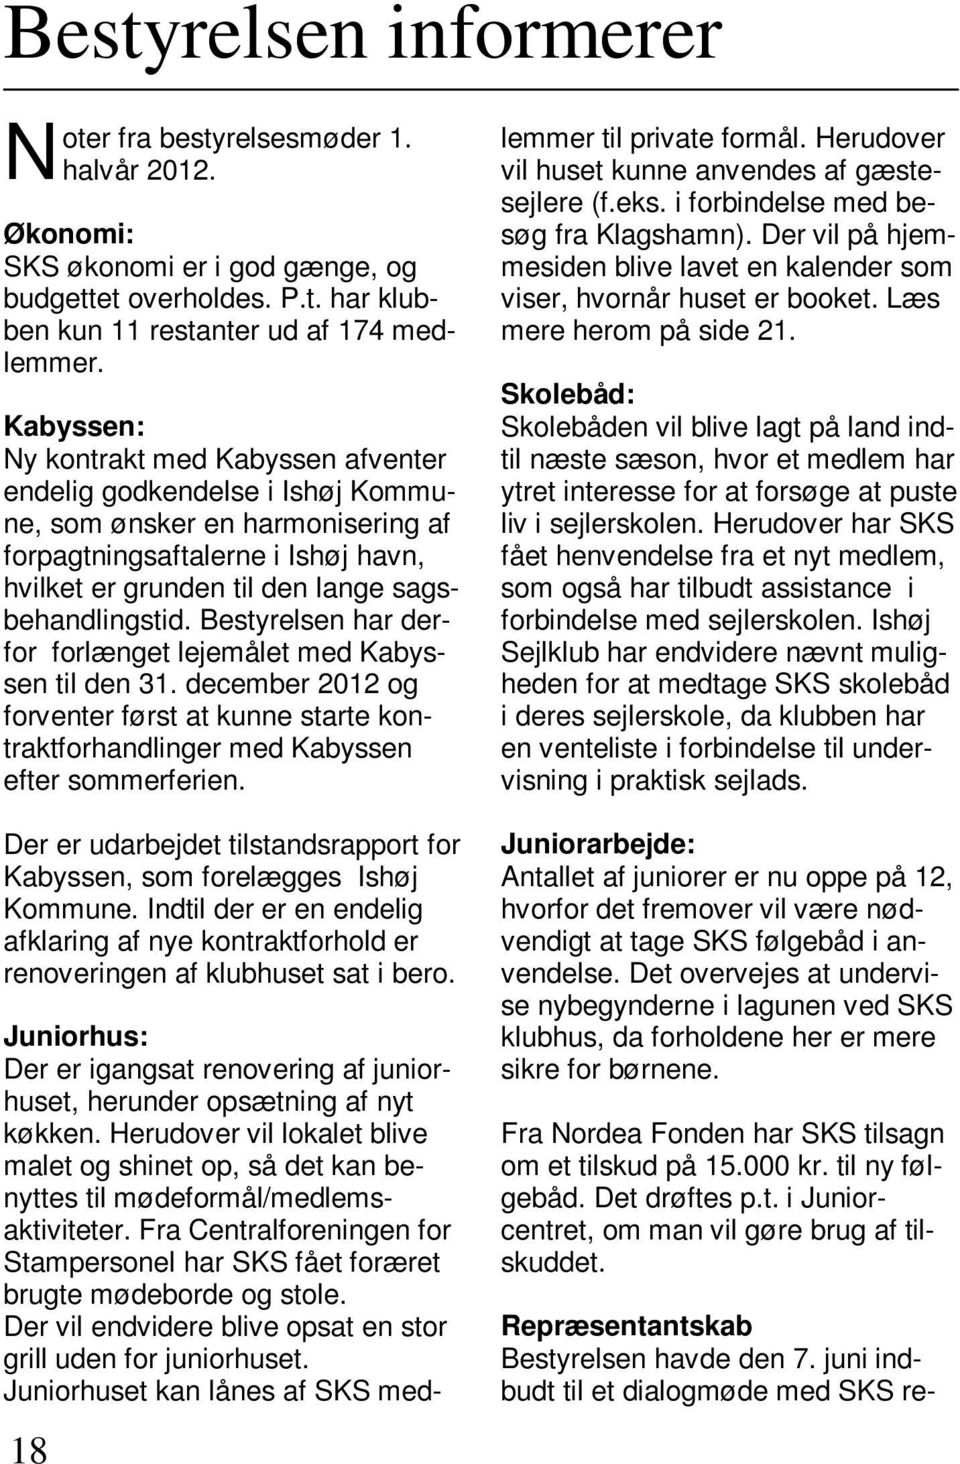 Bestyrelsen har derfor forlænget lejemålet med Kabyssen til den 31. december 2012 og forventer først at kunne starte kontraktforhandlinger med Kabyssen efter sommerferien.